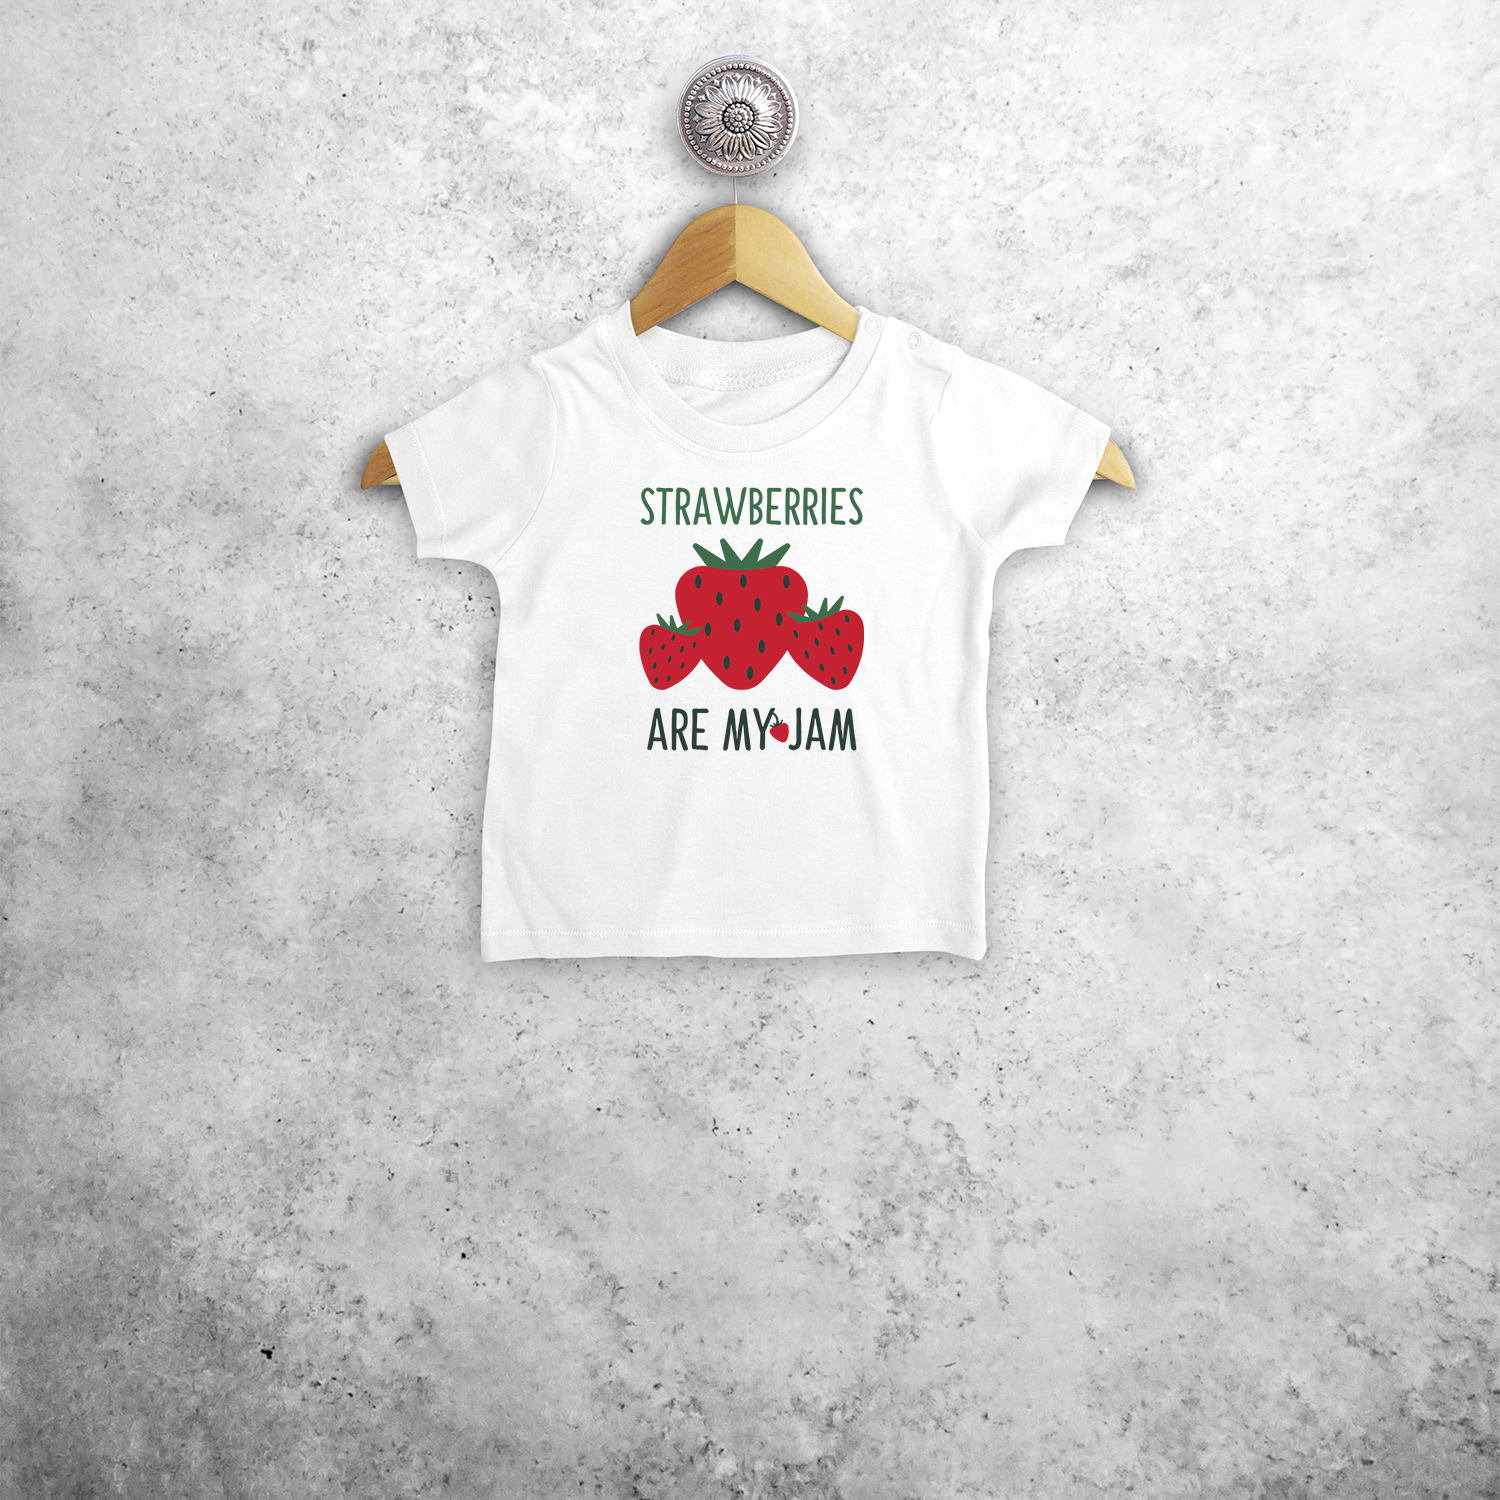 'Strawberries are my jam' baby shortsleeve shirt